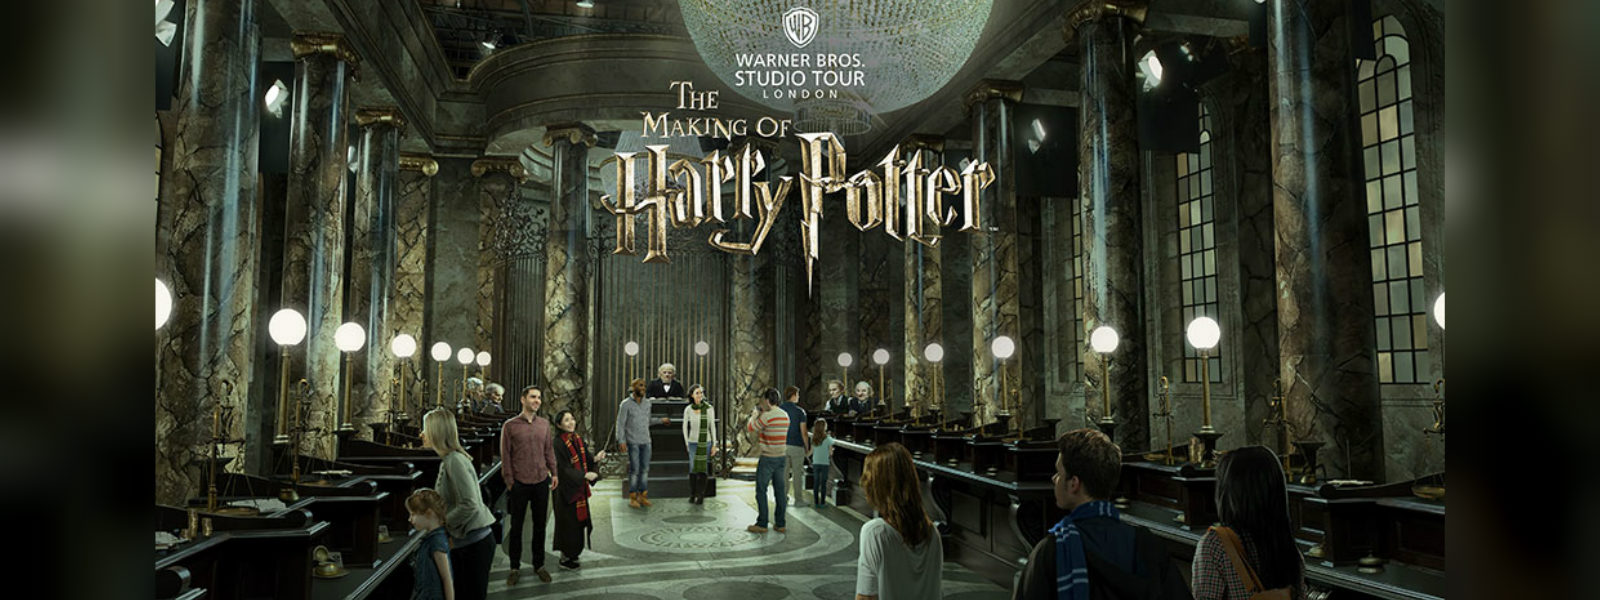 London Harry Potter studio tour expands 